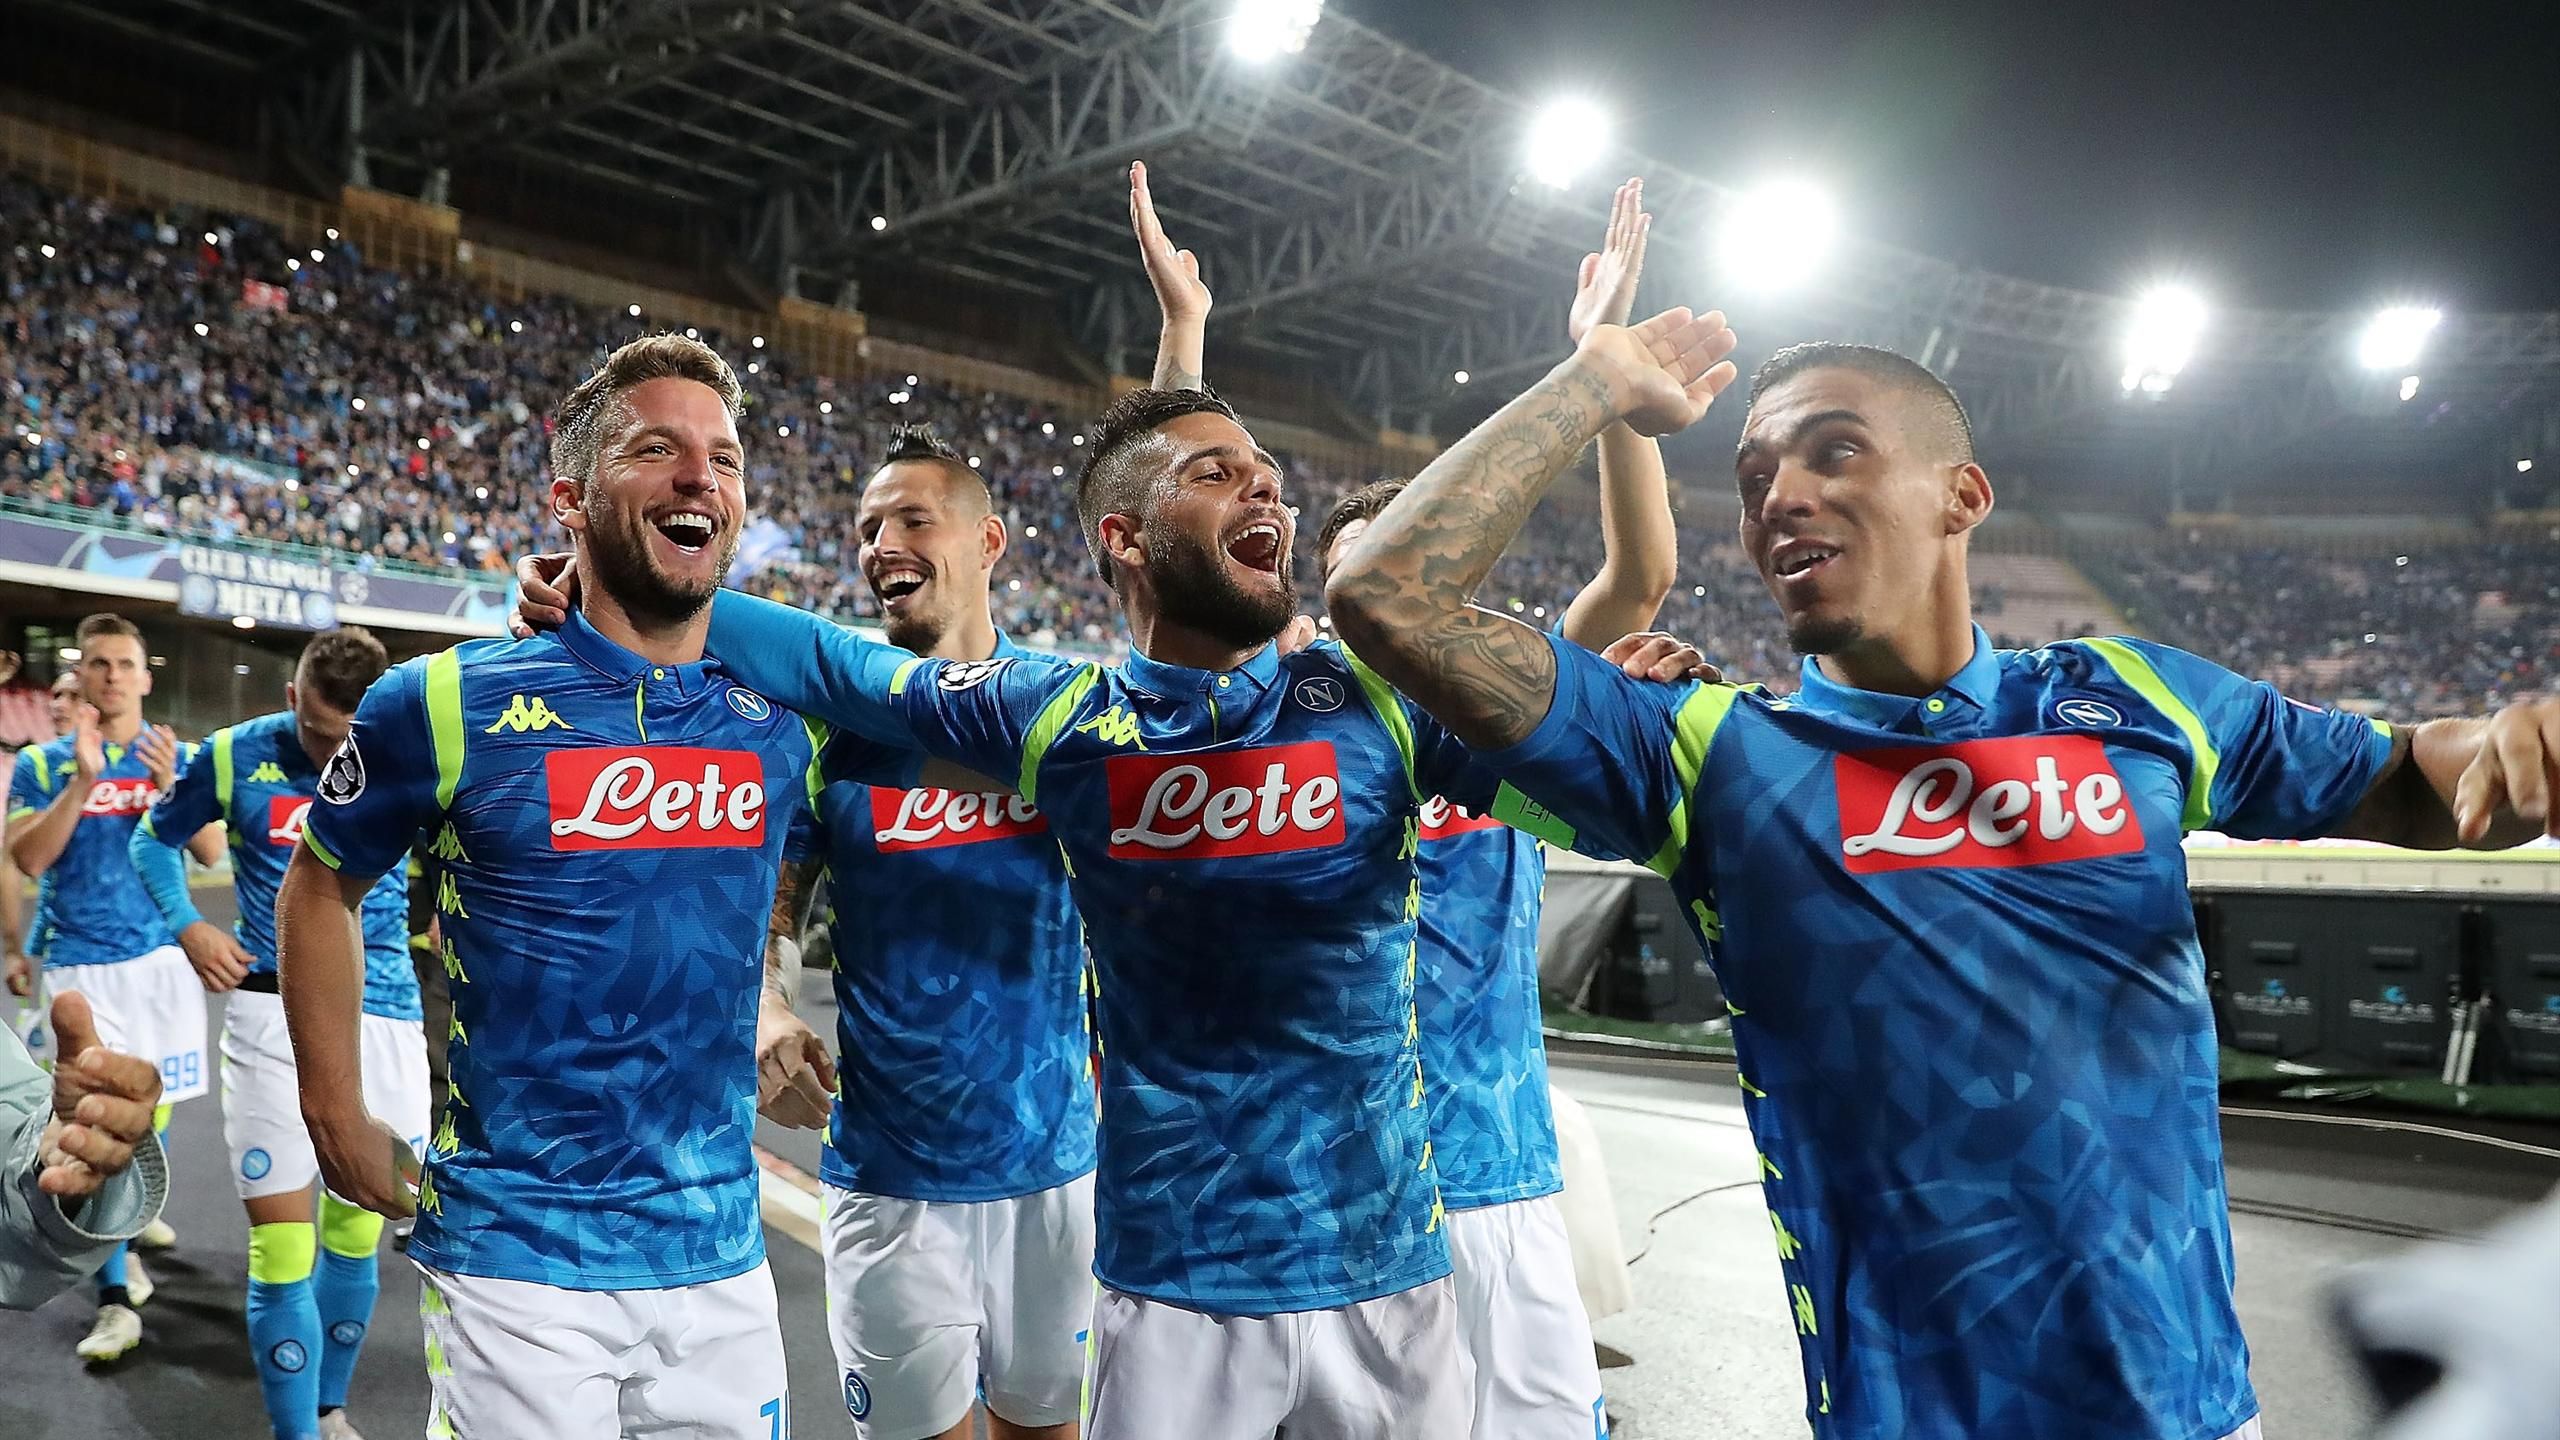 Lorenzo Insigne of SSC Napoli celebrates scoring their side's